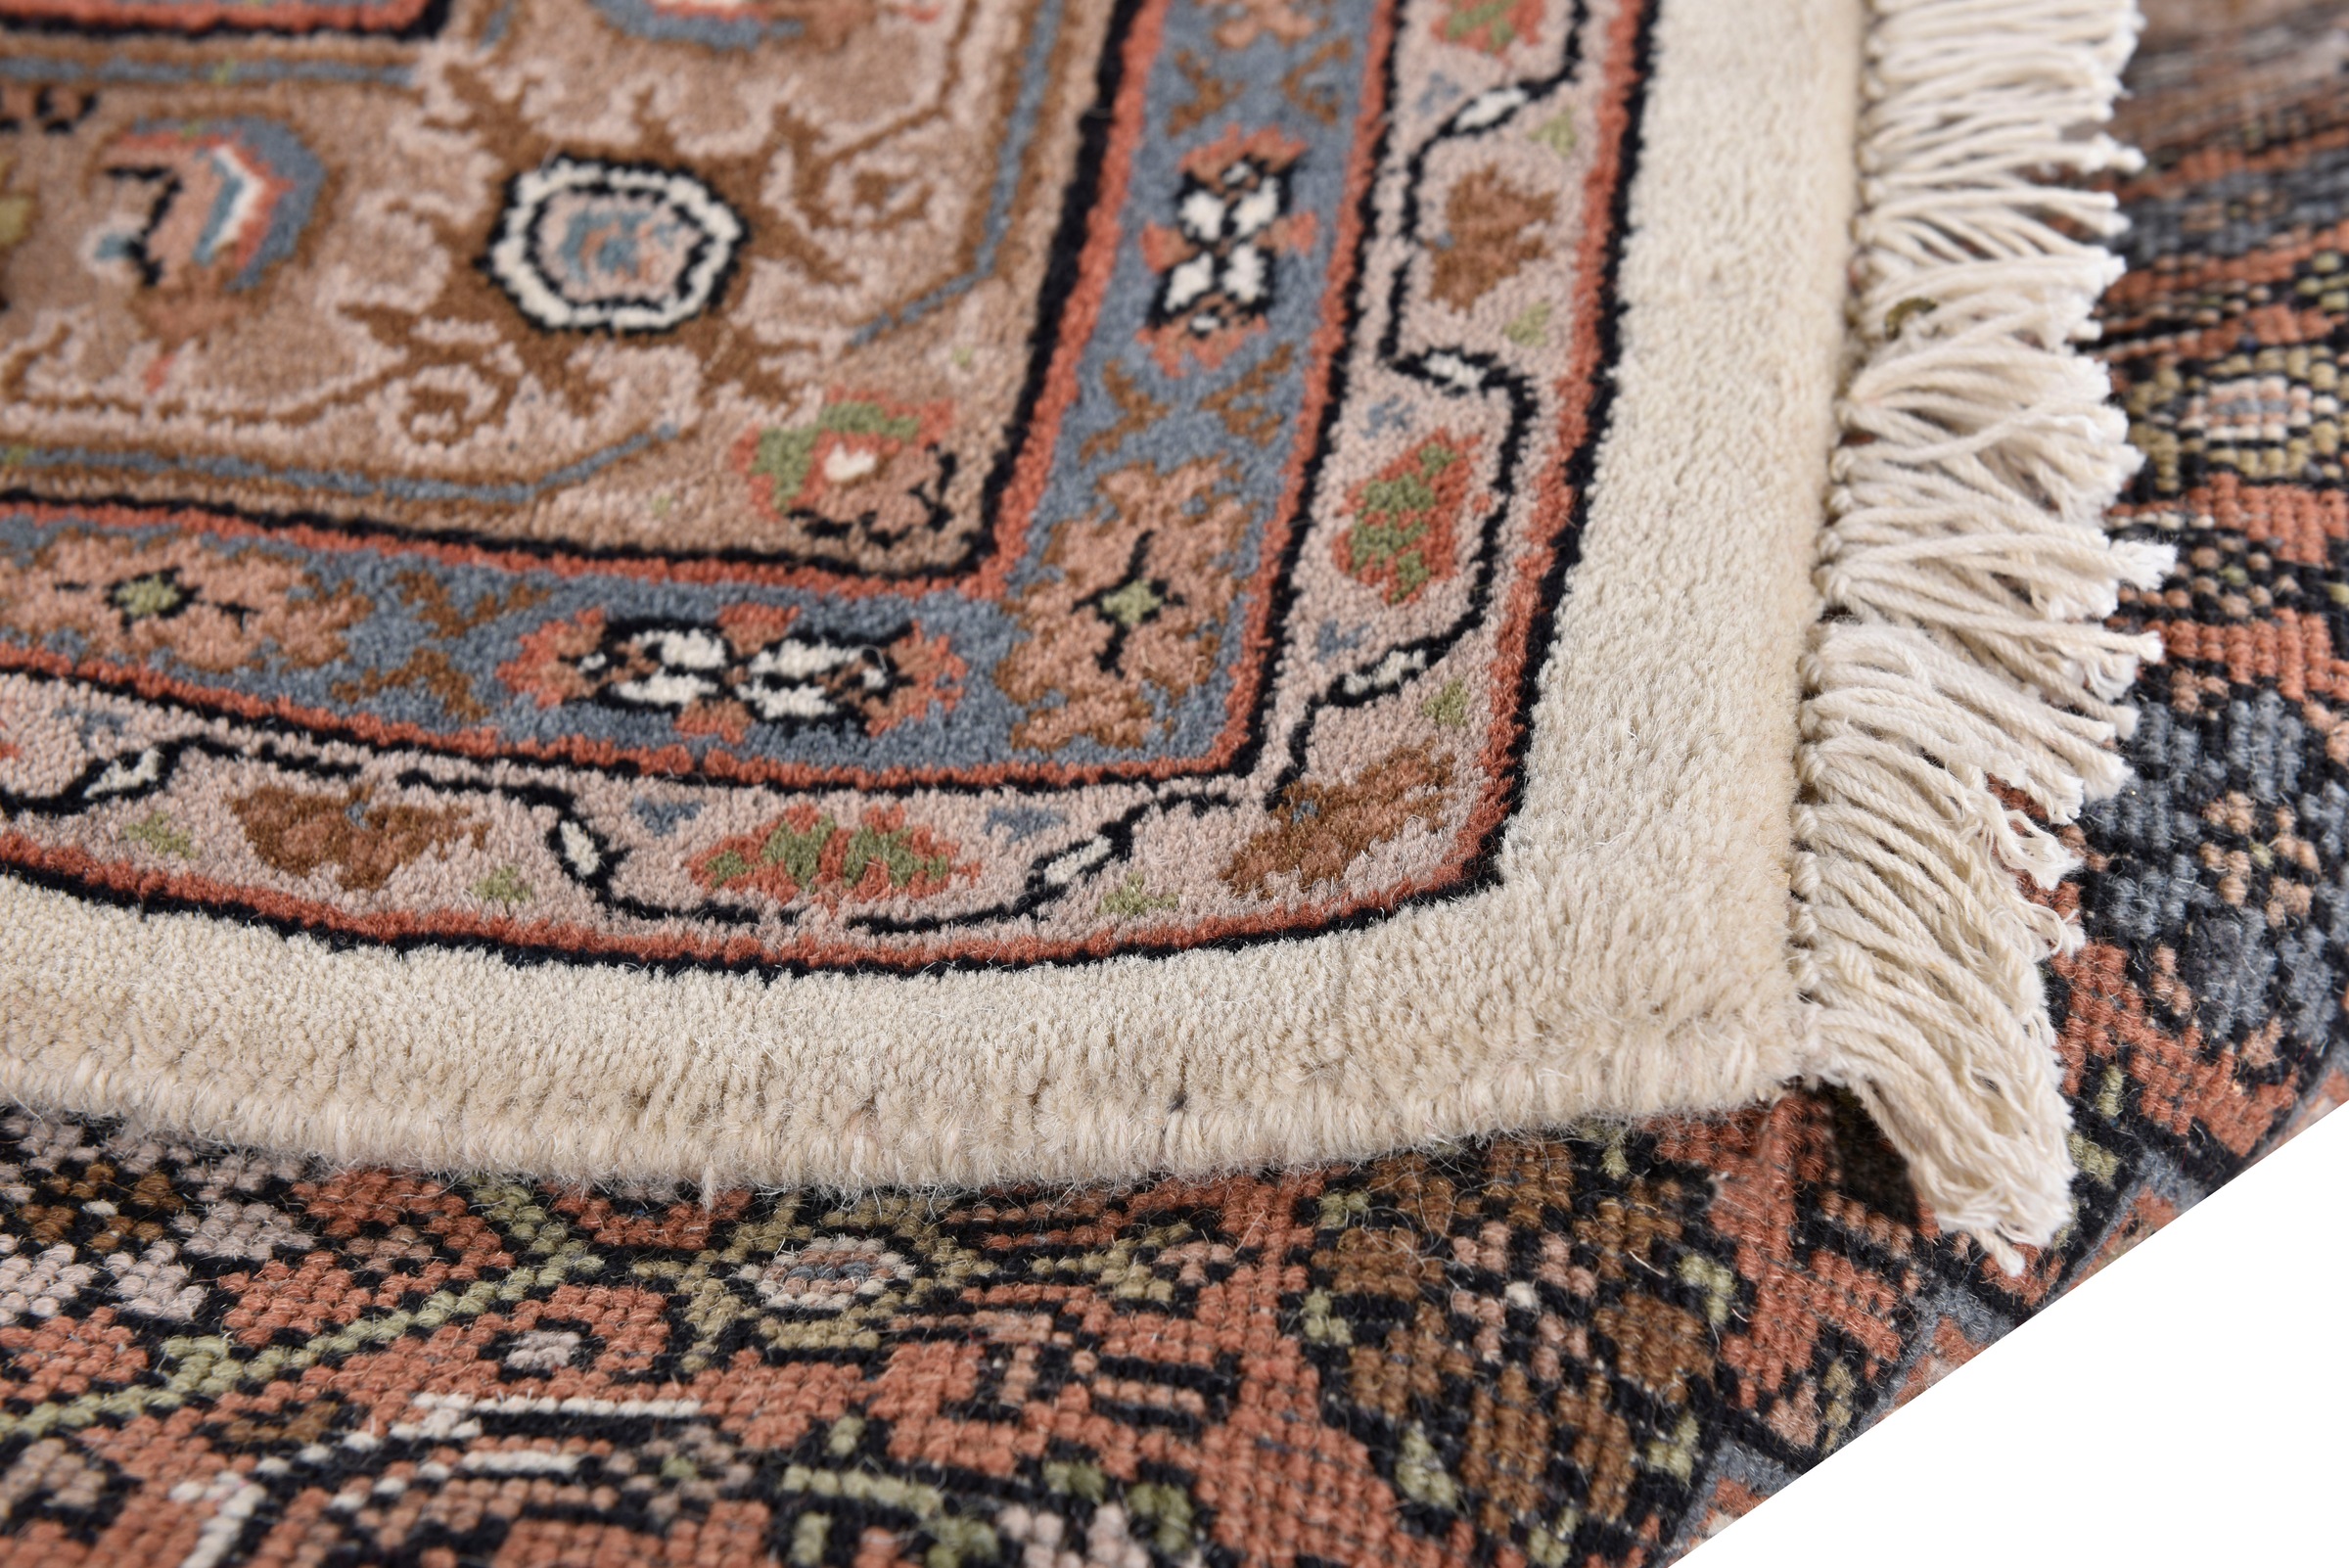 Home affaire Orientteppich »BB Oriental«, rechteckig, reine Wolle, handgeknüpft, orientalisches Design, Wohnzimmer